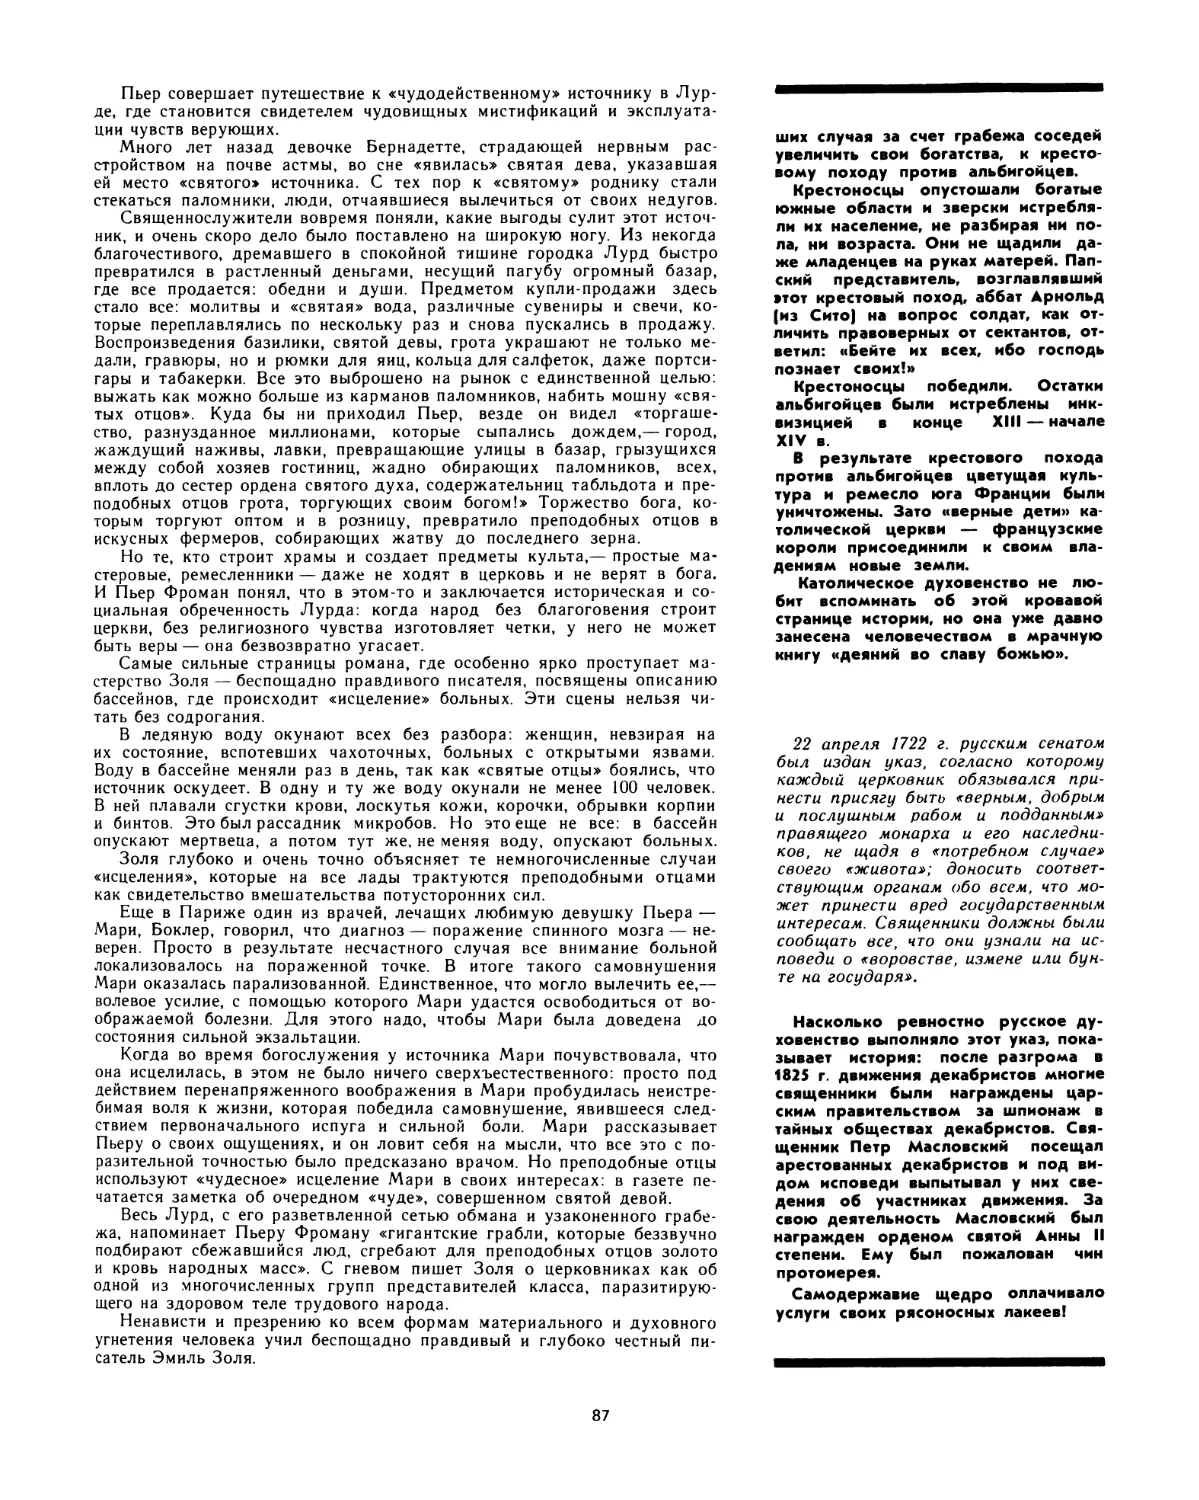 22 апреля 1722 г. Русским сенатом был издан указ, обязывающий священников сообщать сведения, полученные во время исповеди